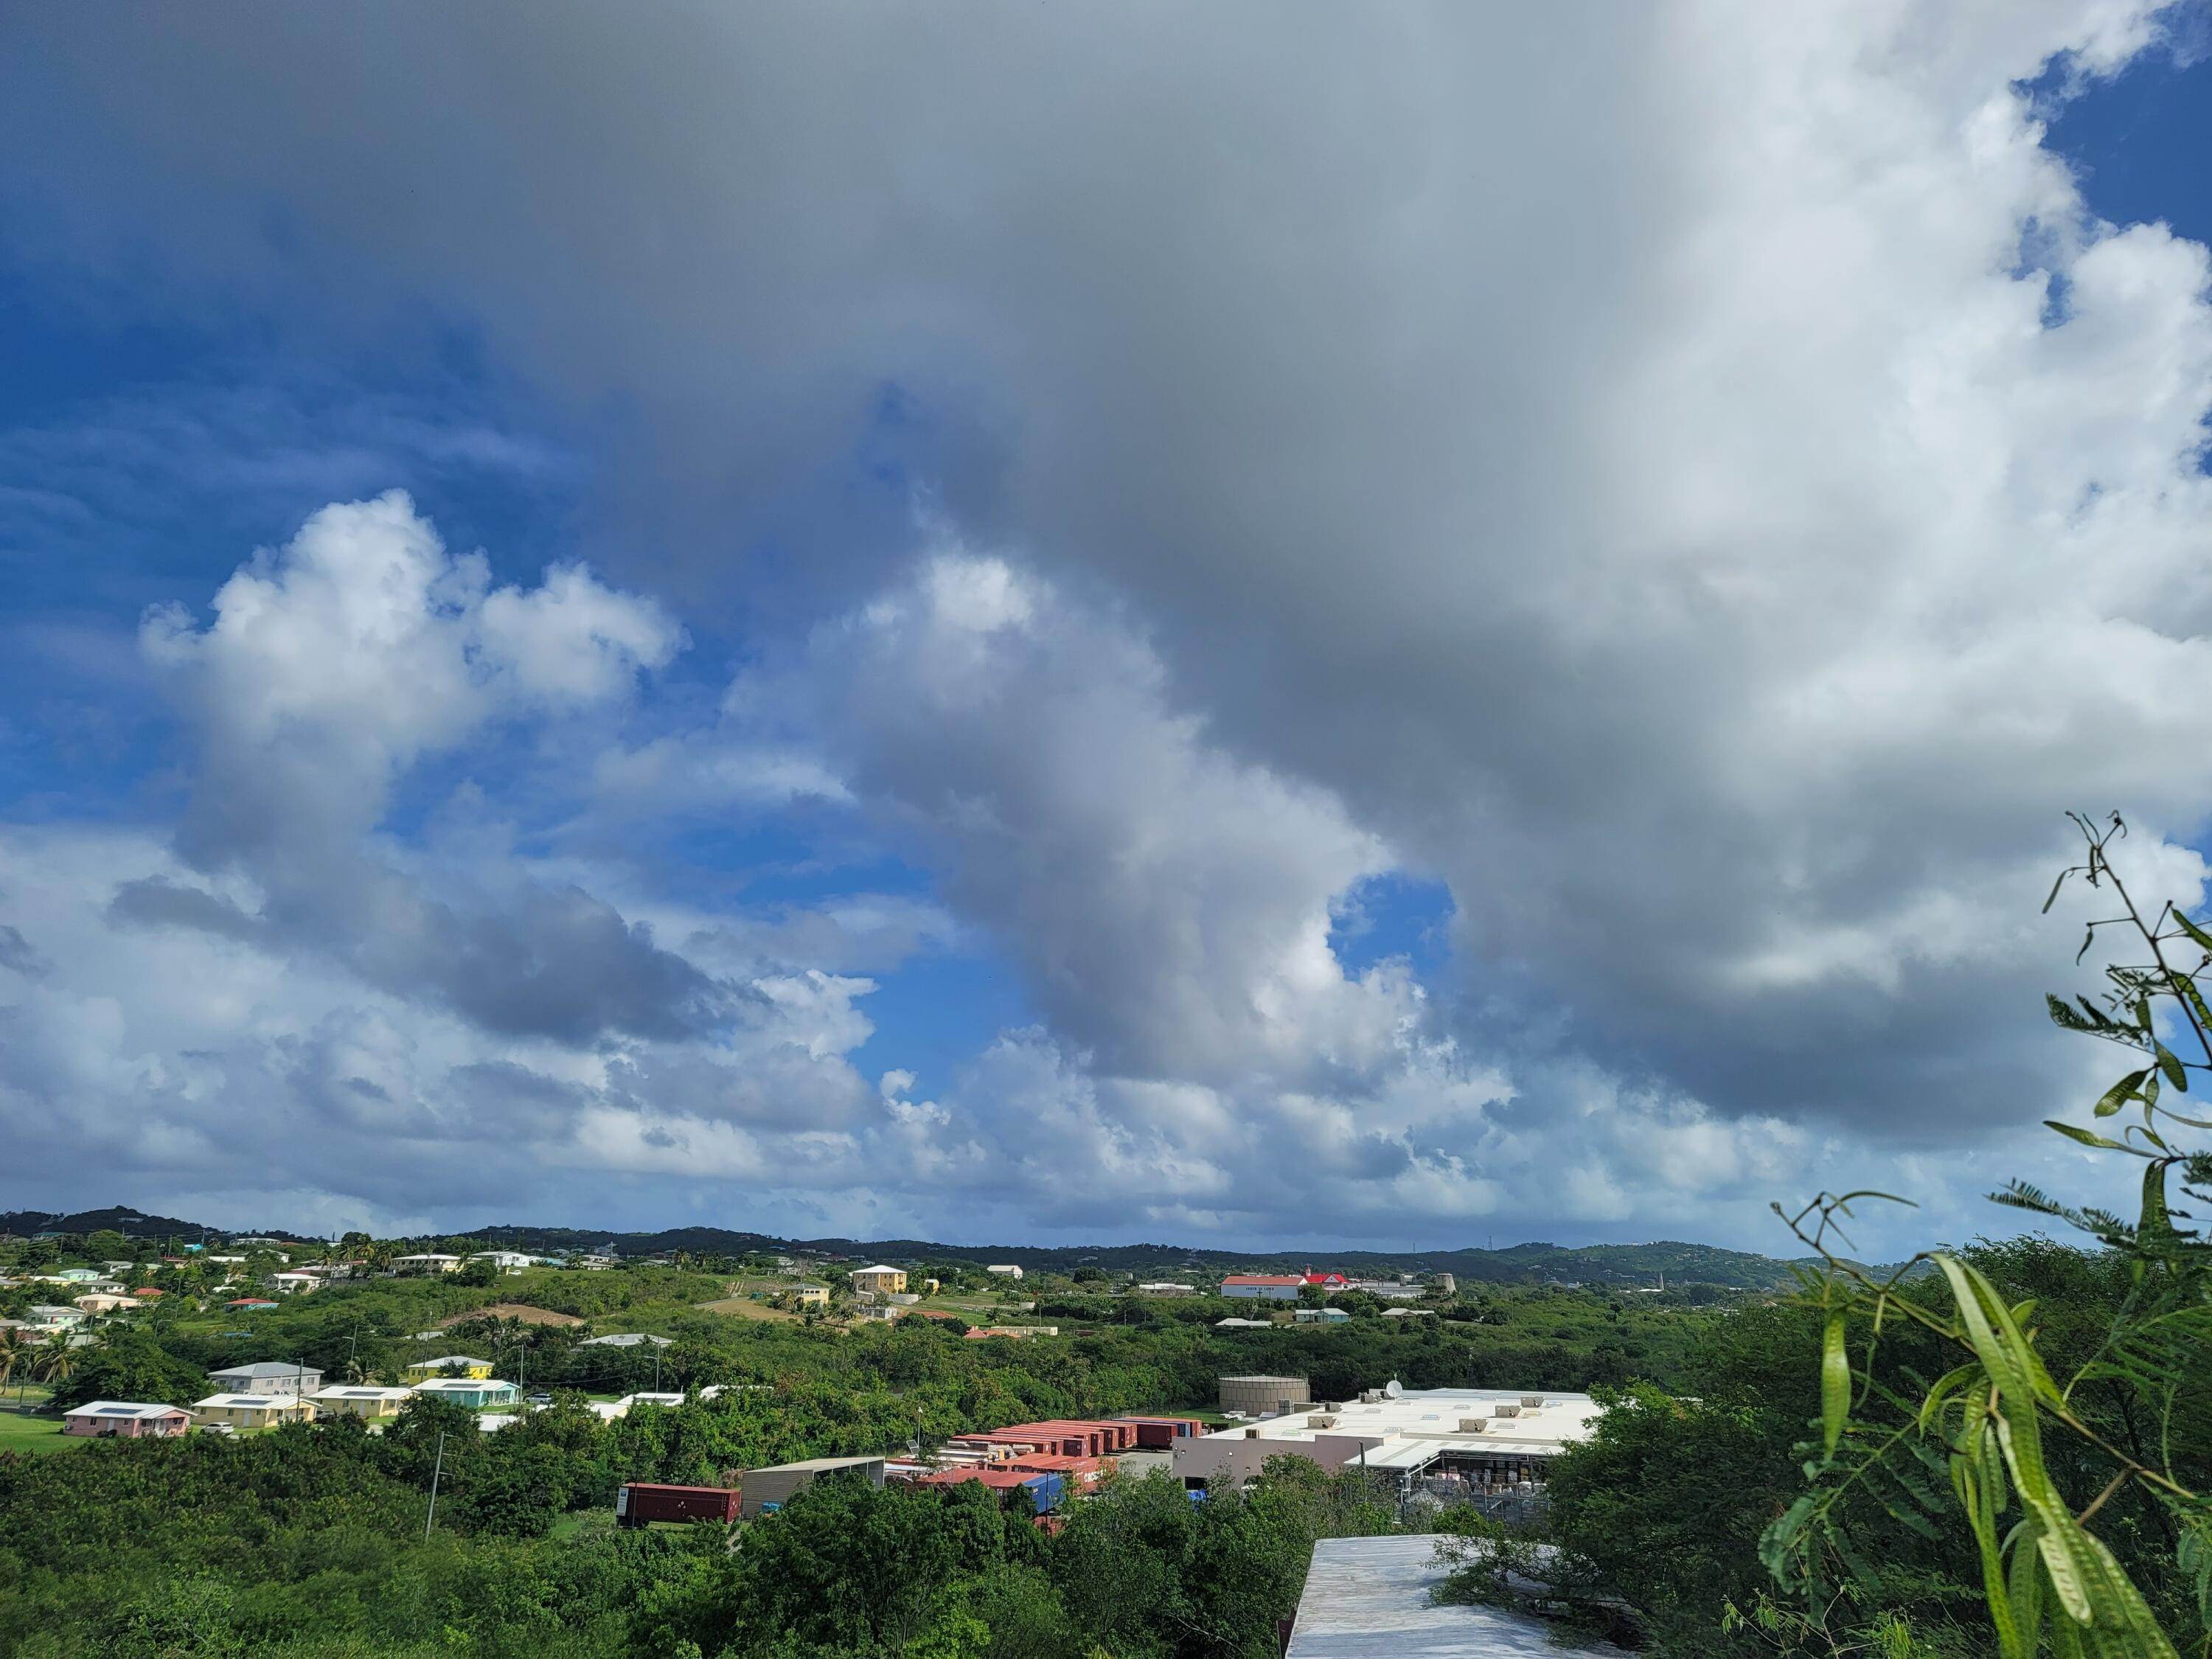 4. Land for Sale at 467 Barren Spot KI St Croix, Virgin Islands 00820 United States Virgin Islands